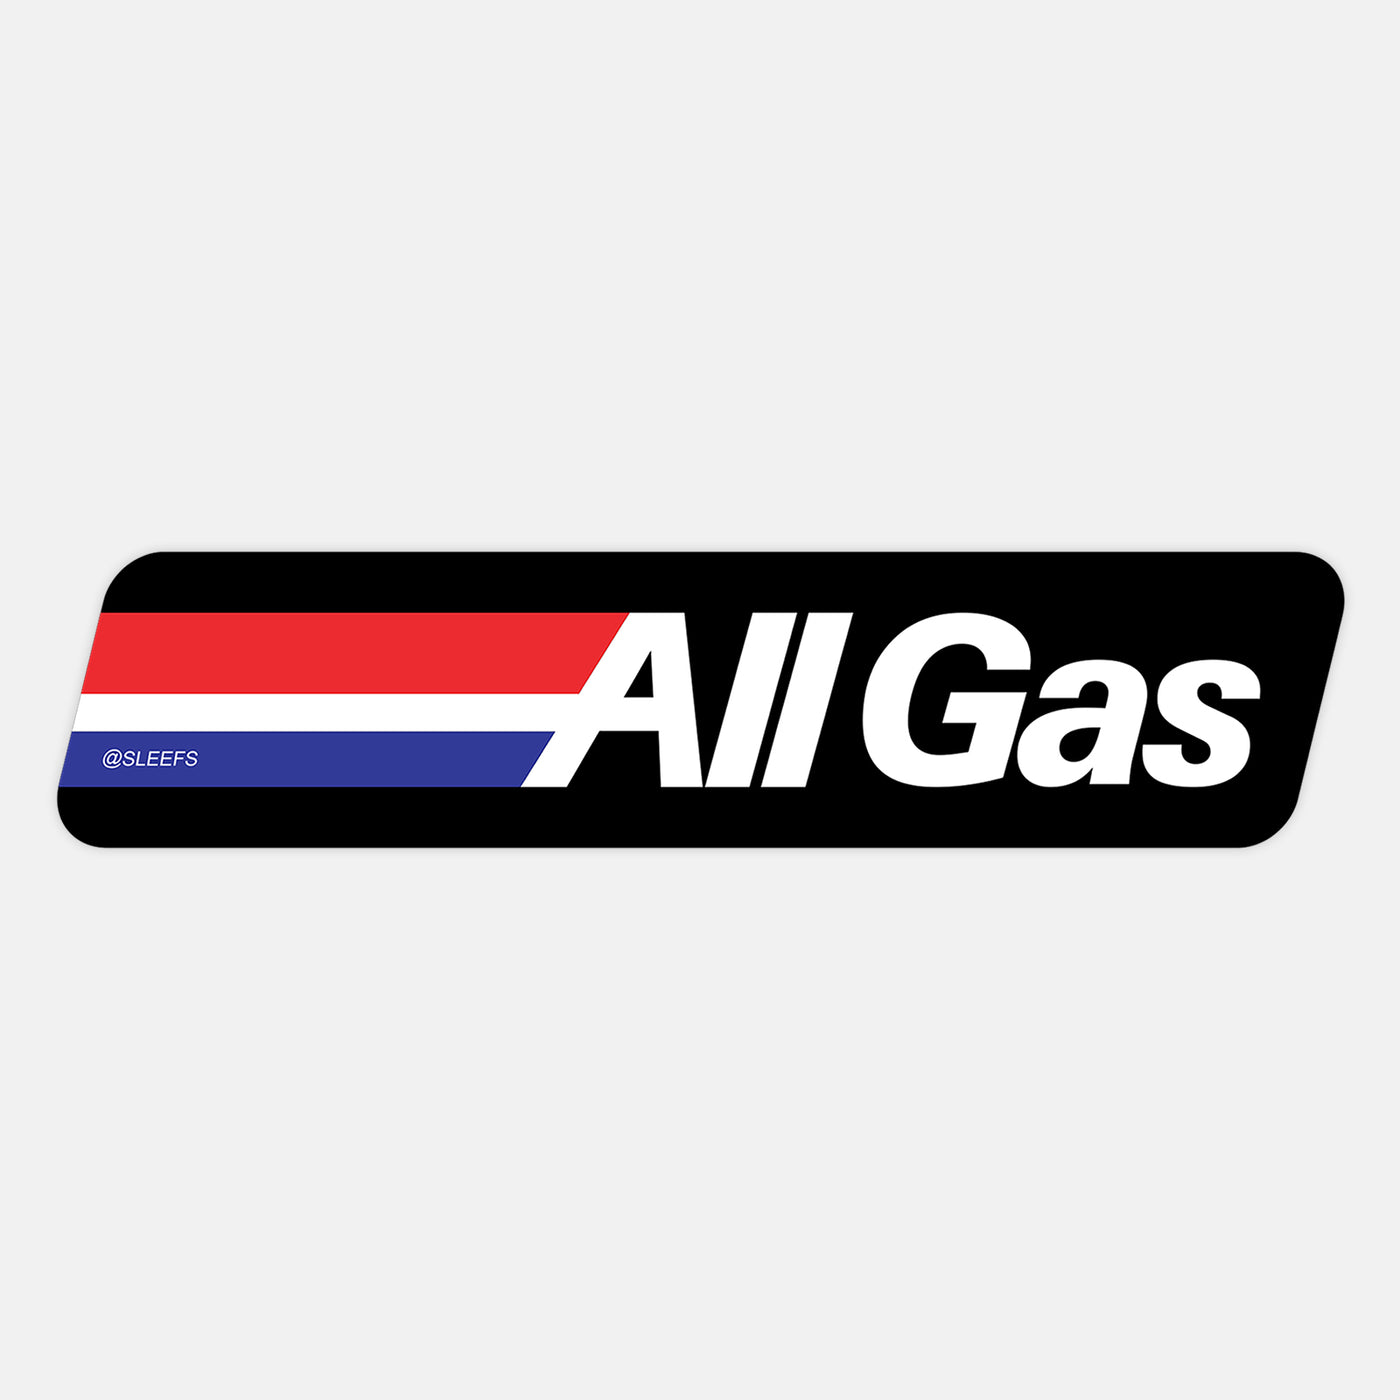 All Gas Sticker